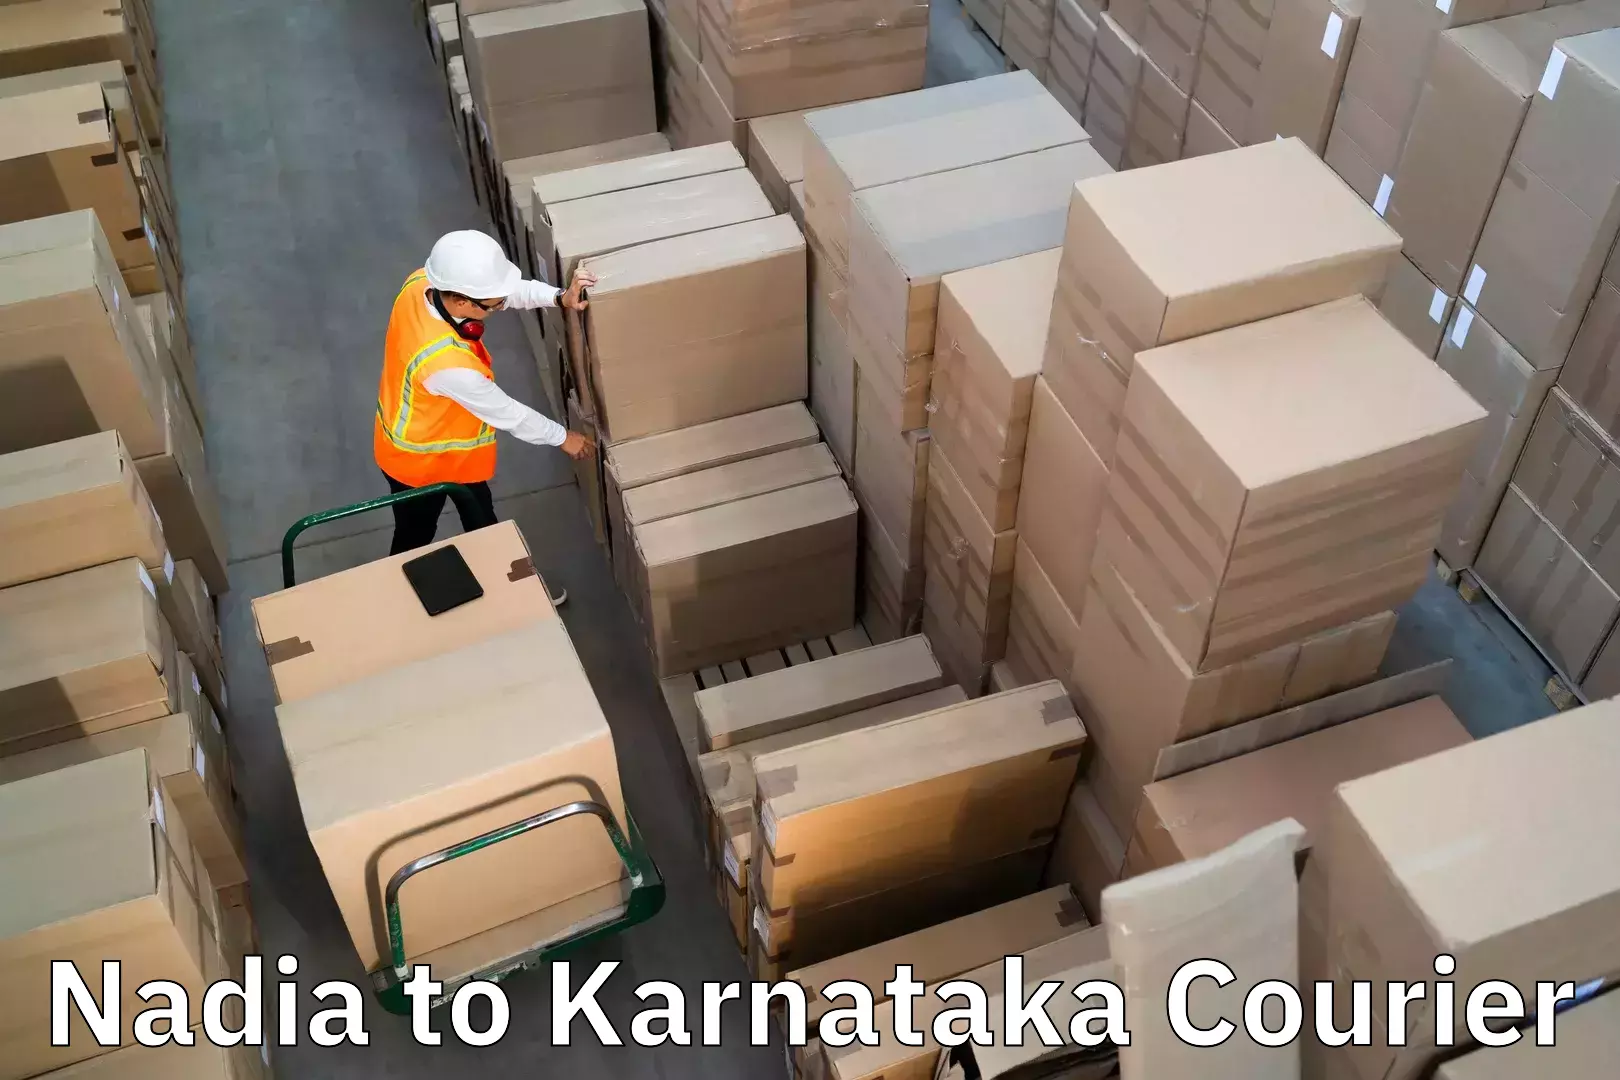 Personalized luggage shipping Nadia to Karnataka